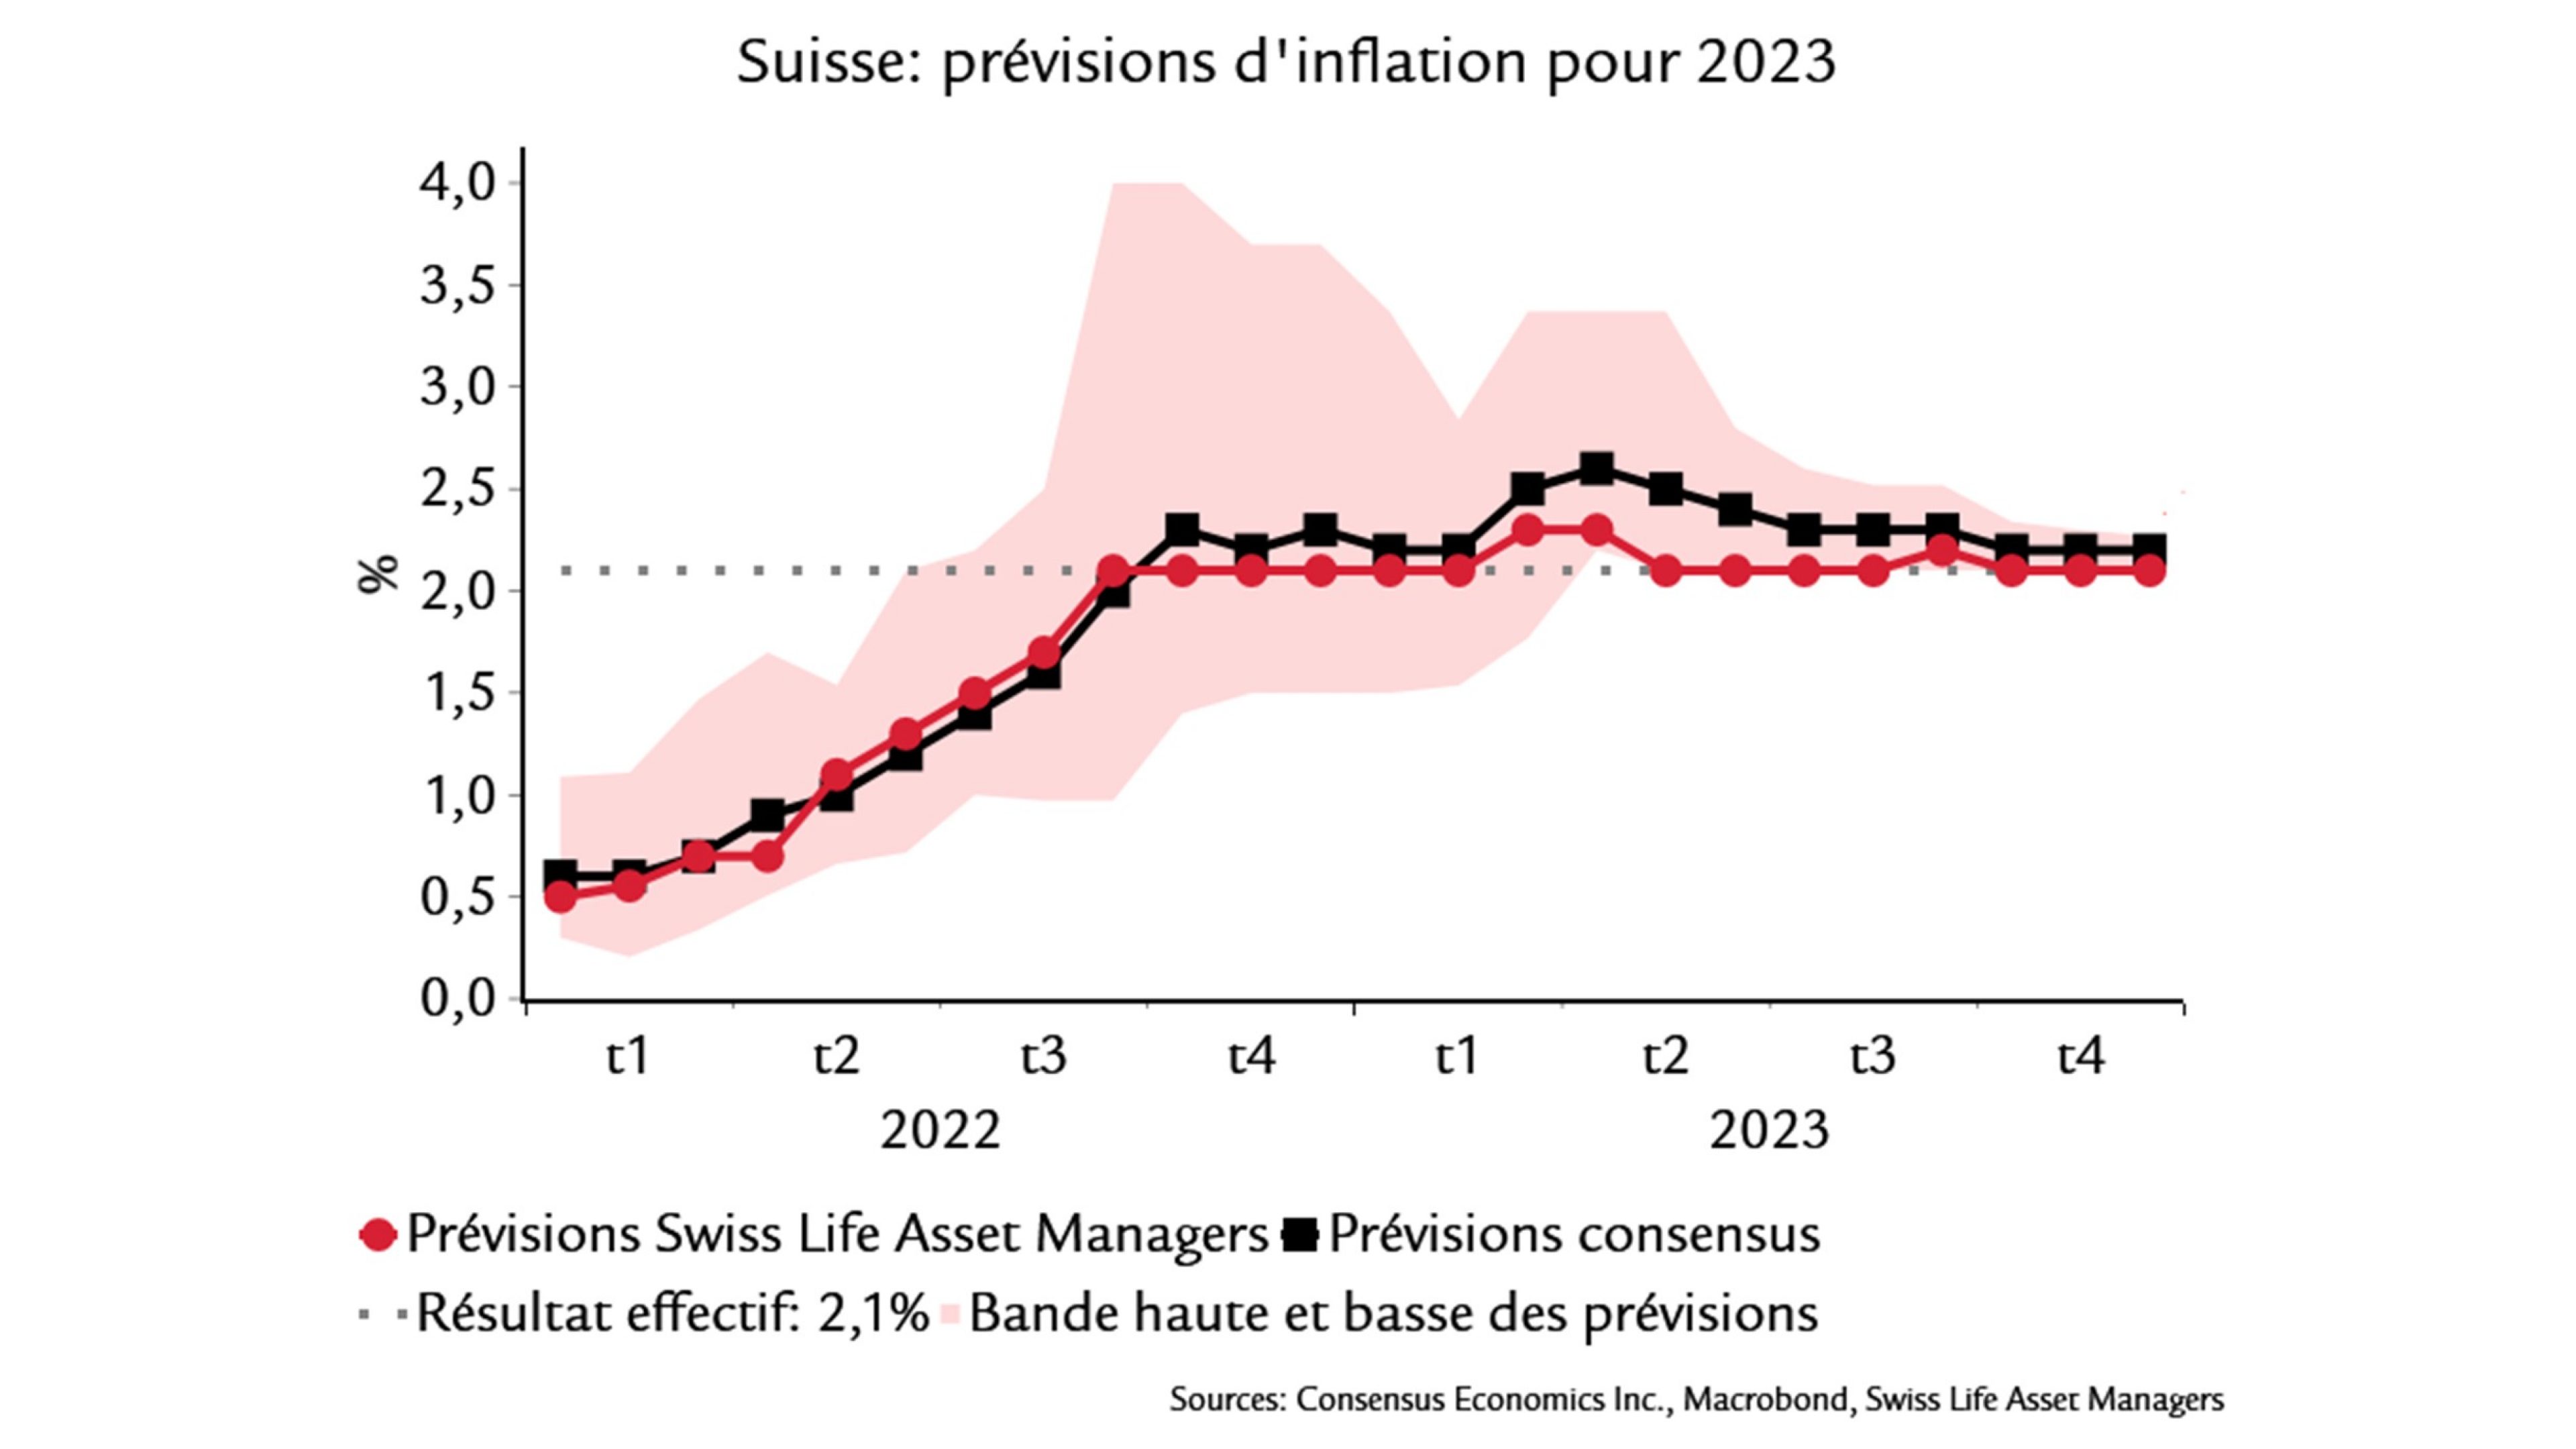 graphique montre: Prévisions d'inflation pour 2023 (Suisse)